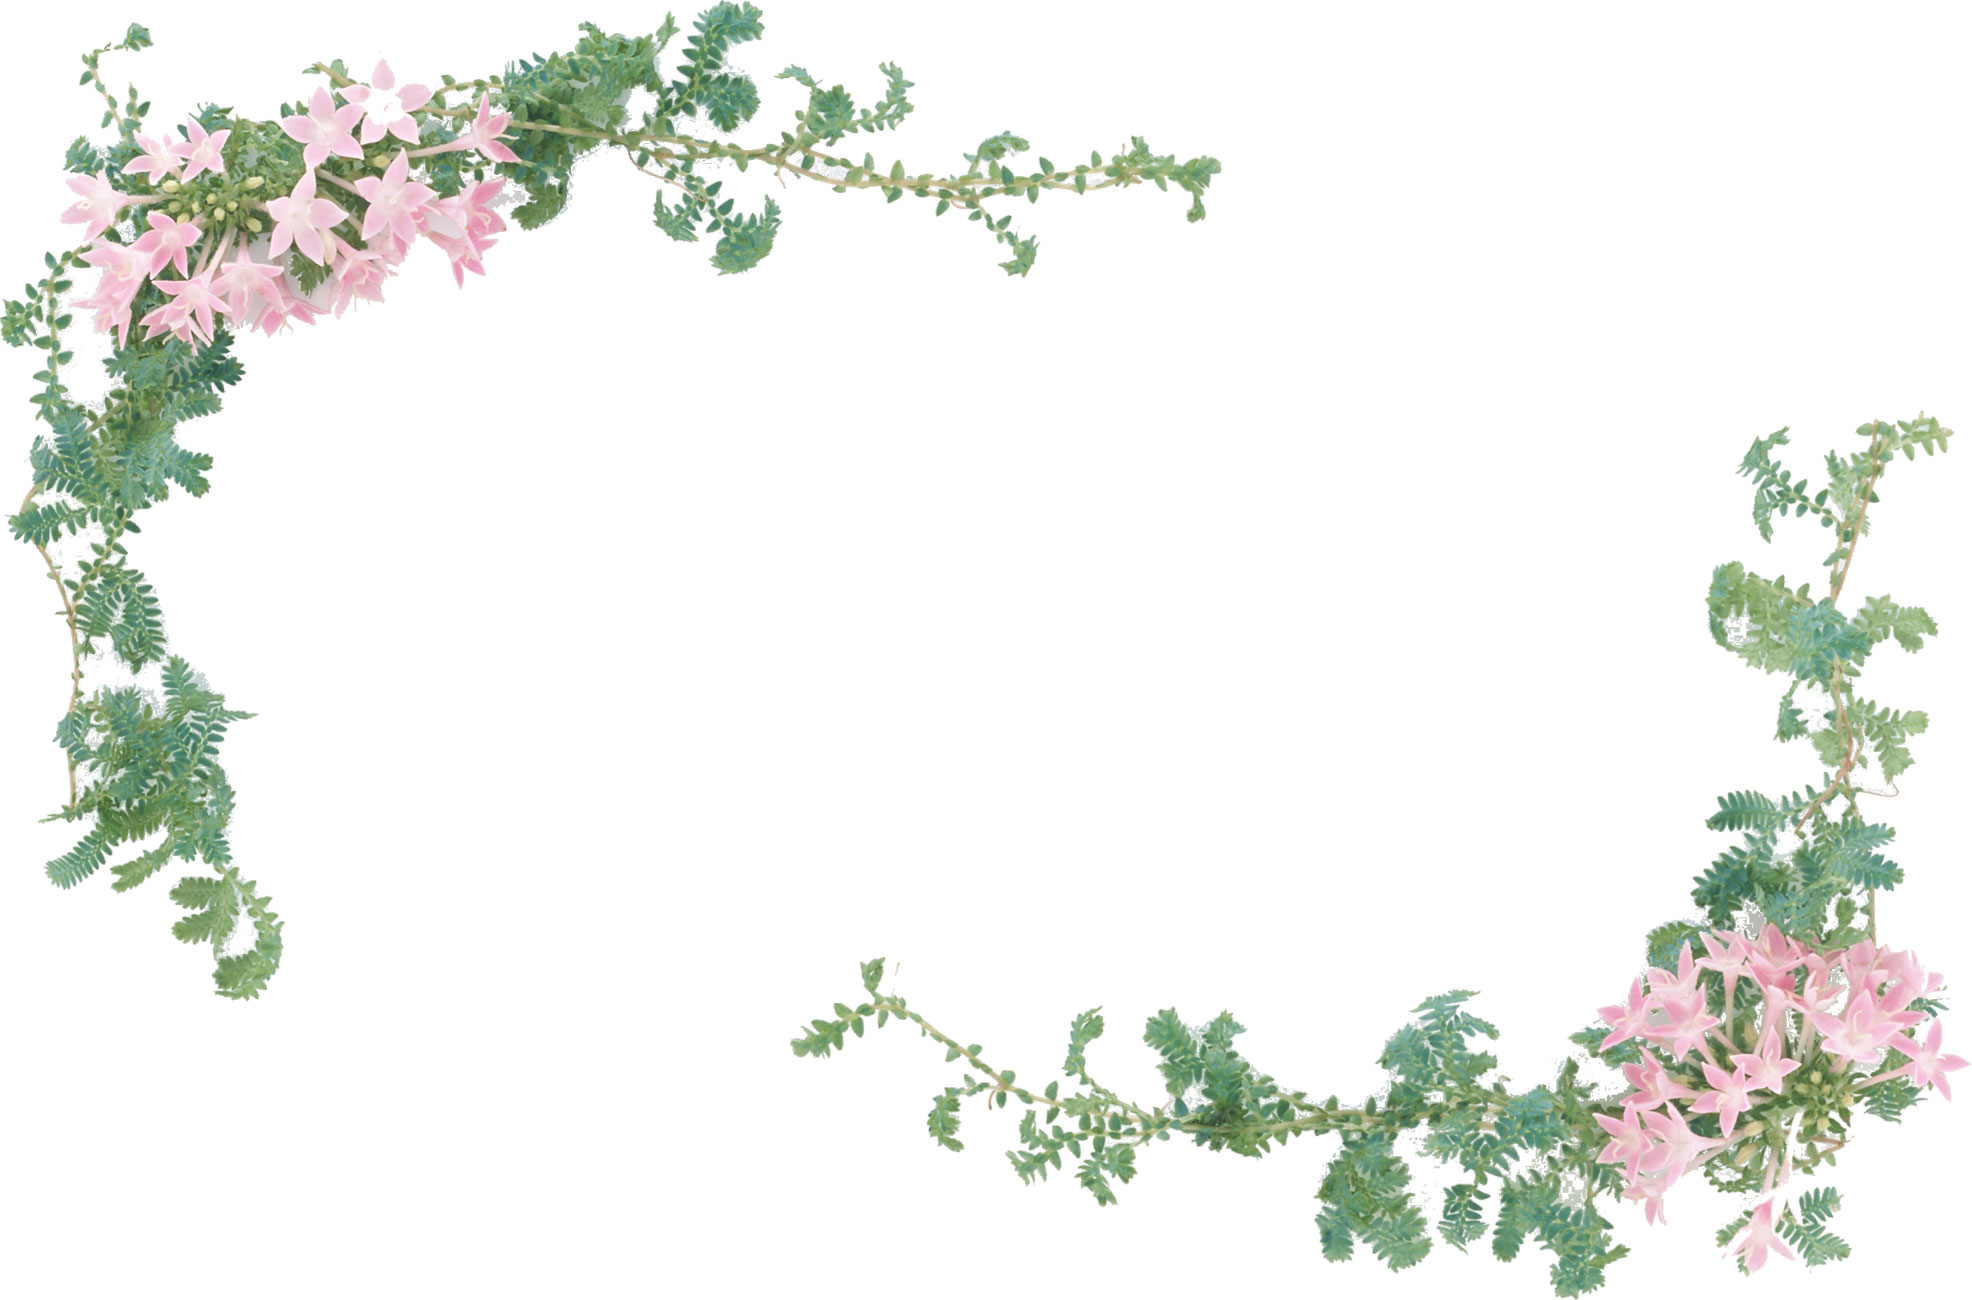 花の写真 フリー素材 フレーム枠no 121 ピンク 緑 葉